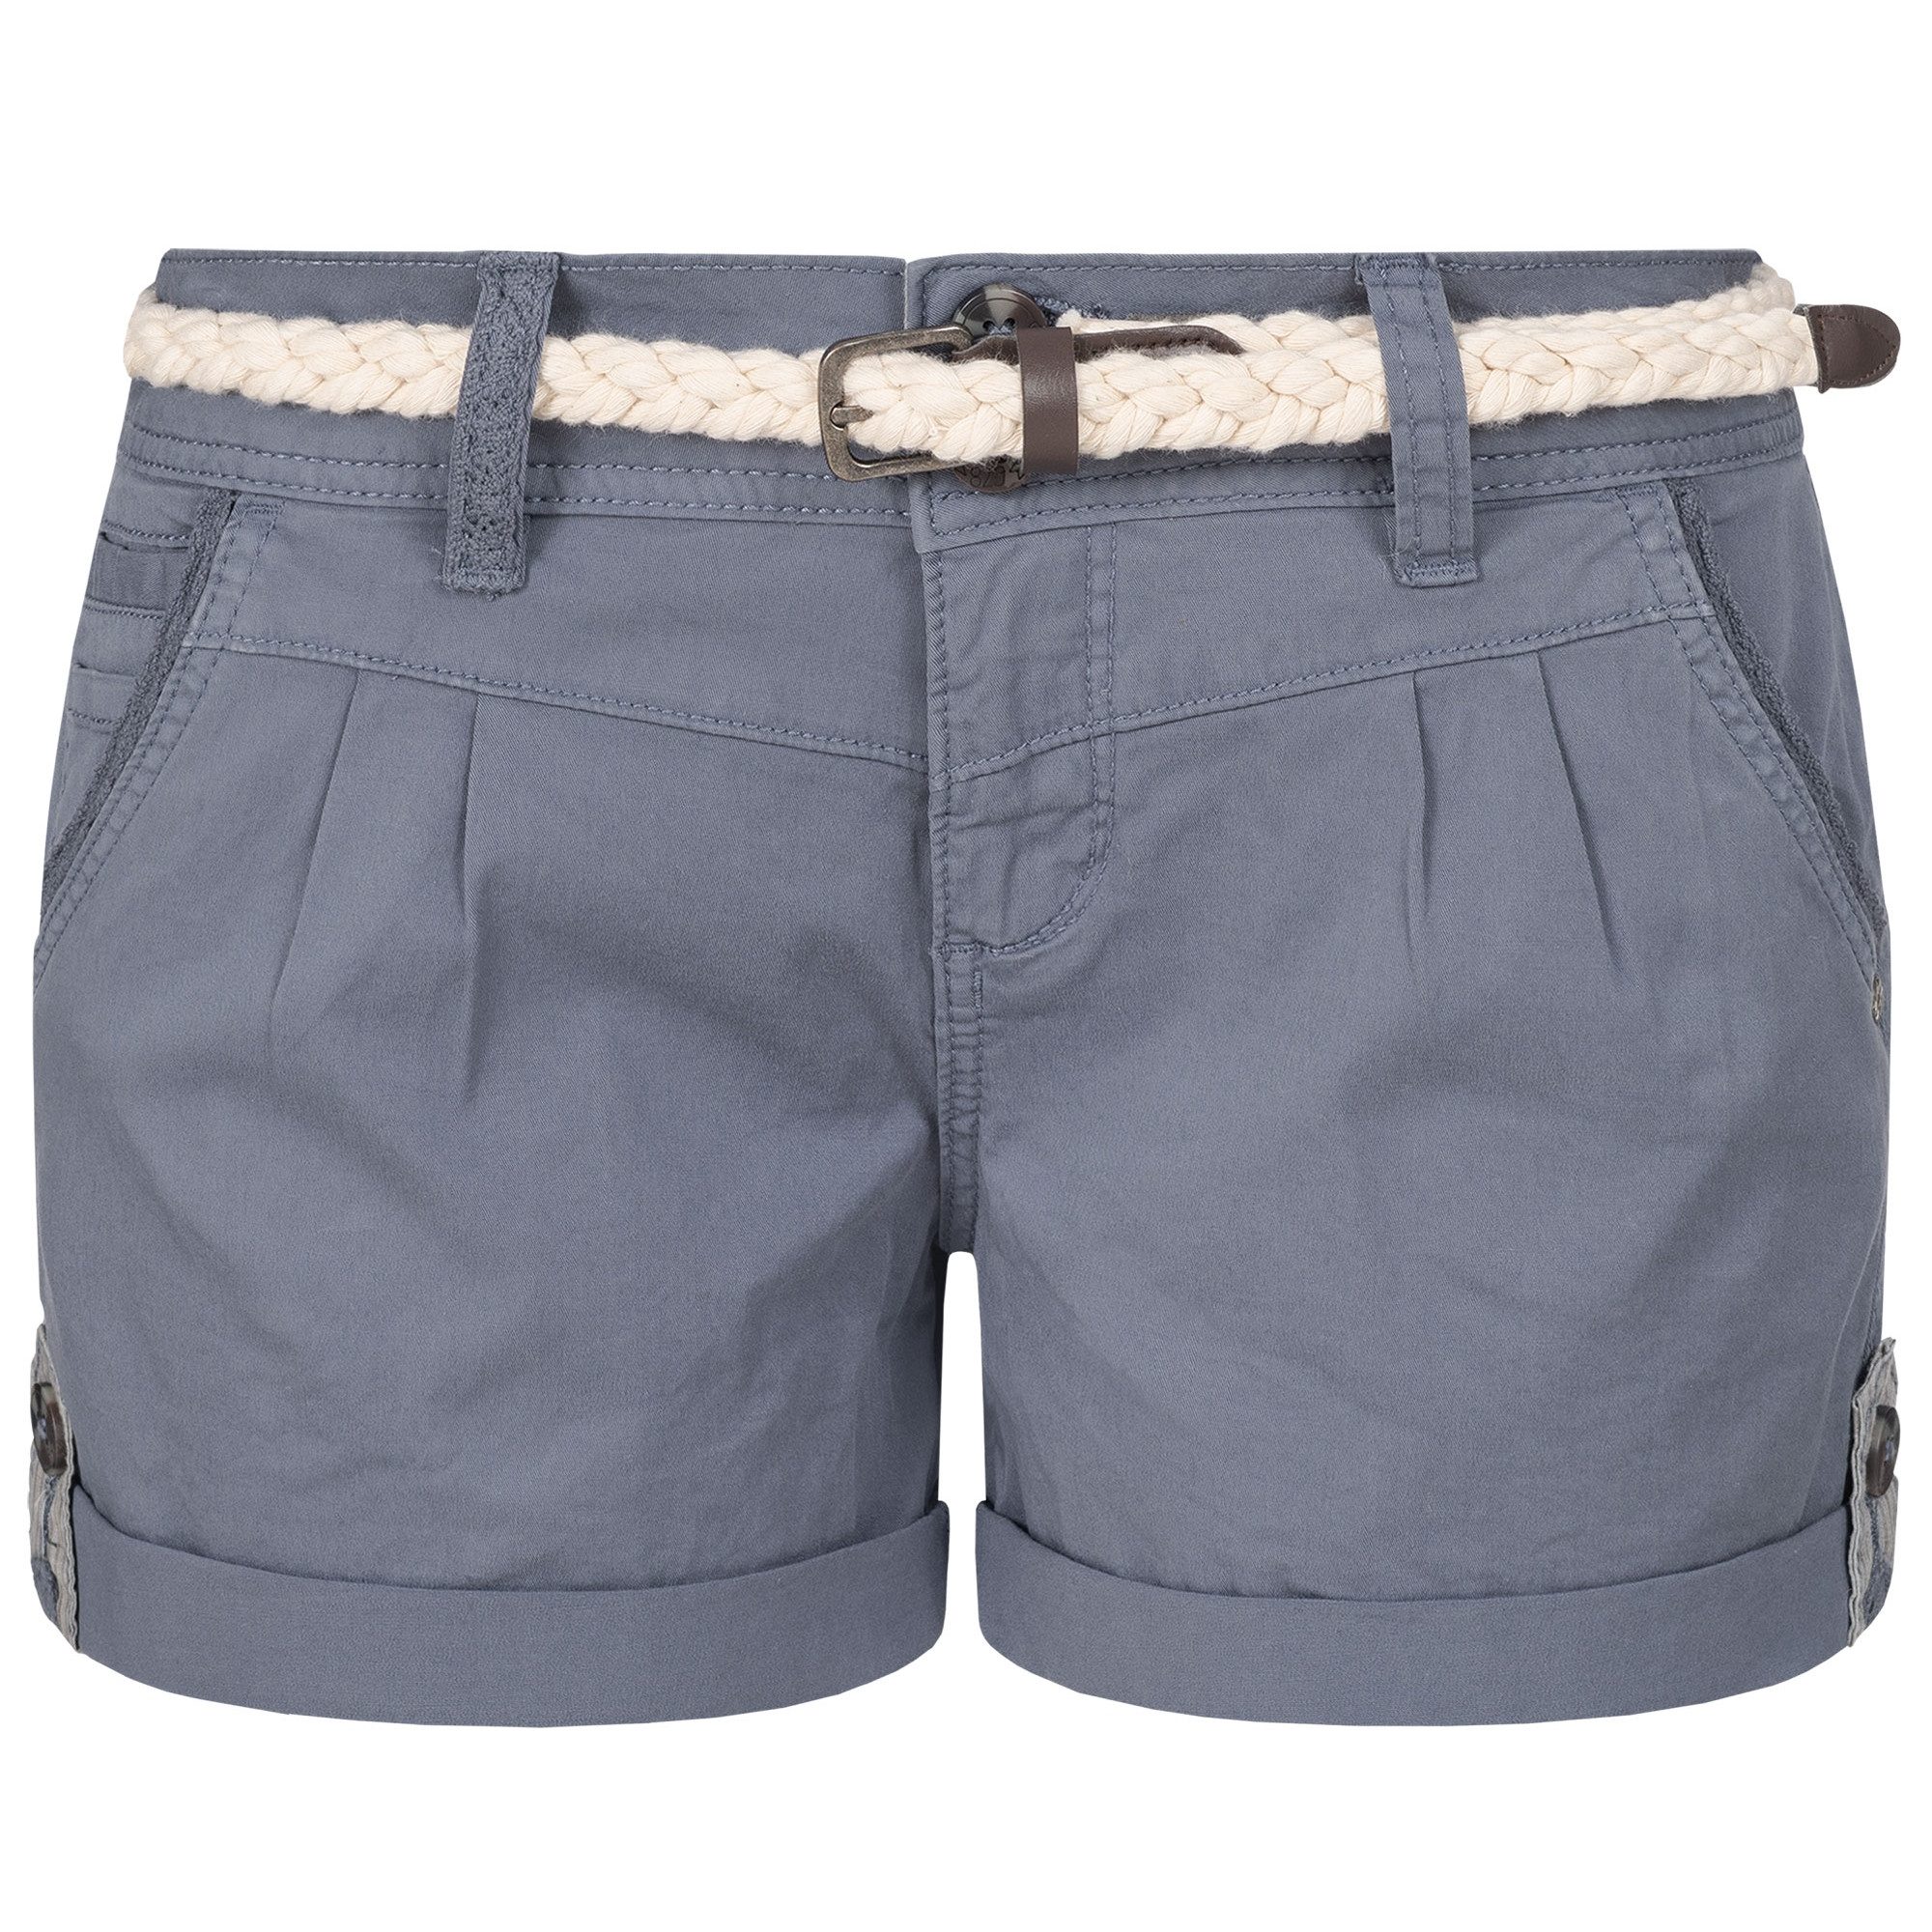 SUBLEVEL Shorts Damen Bermudas kurze Hose Baumwolle Hotpants Chino Sommer Hose elastisch, flex, bequem, mit Flechtgürtel